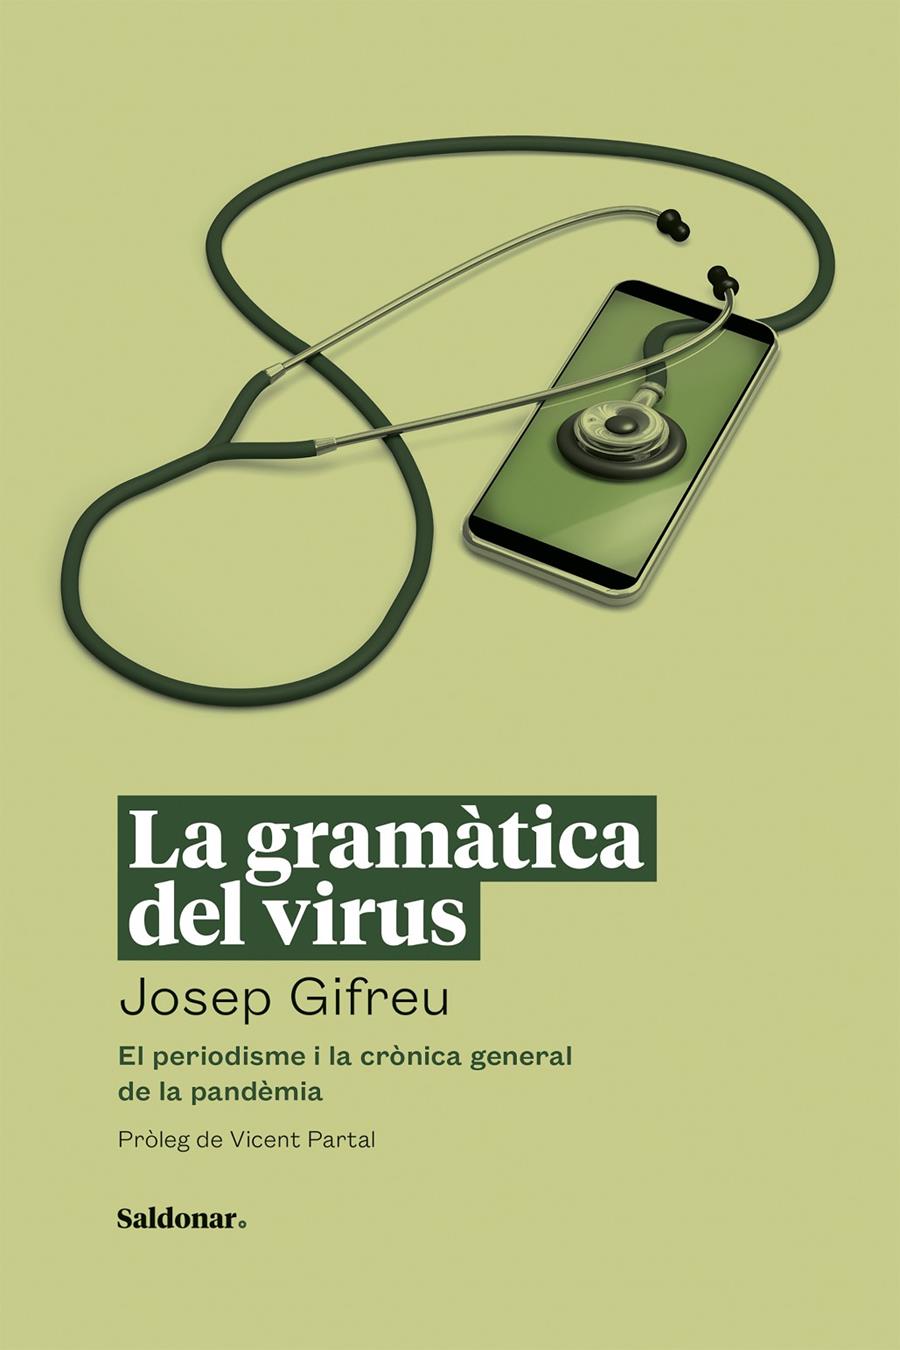 La gramàtica del virus | Gifreu, Josep | Cooperativa autogestionària